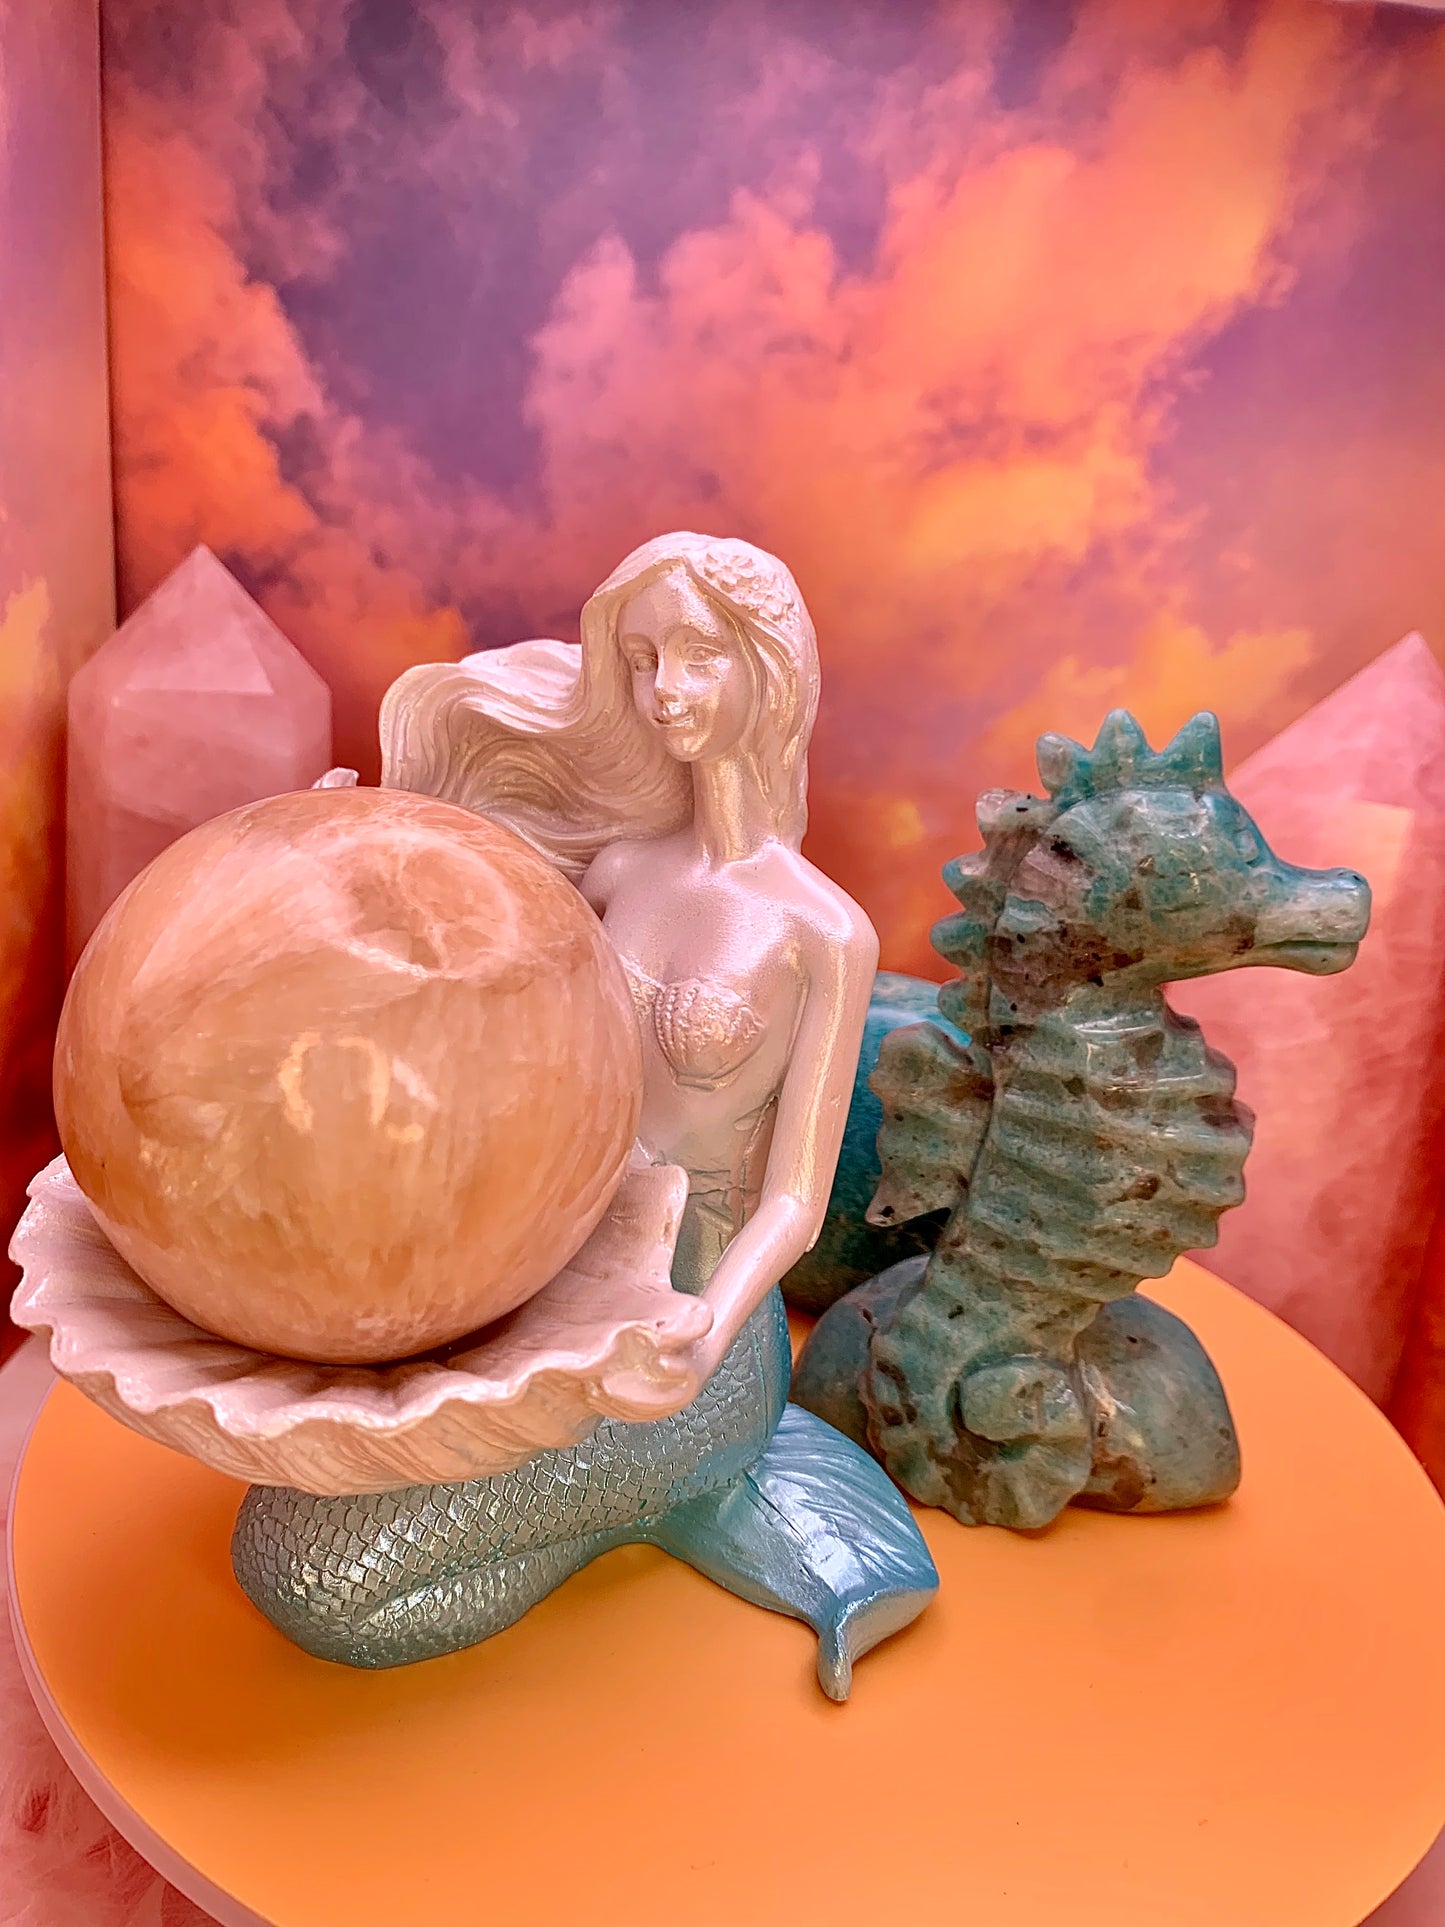 Mermaid Sphere Stand